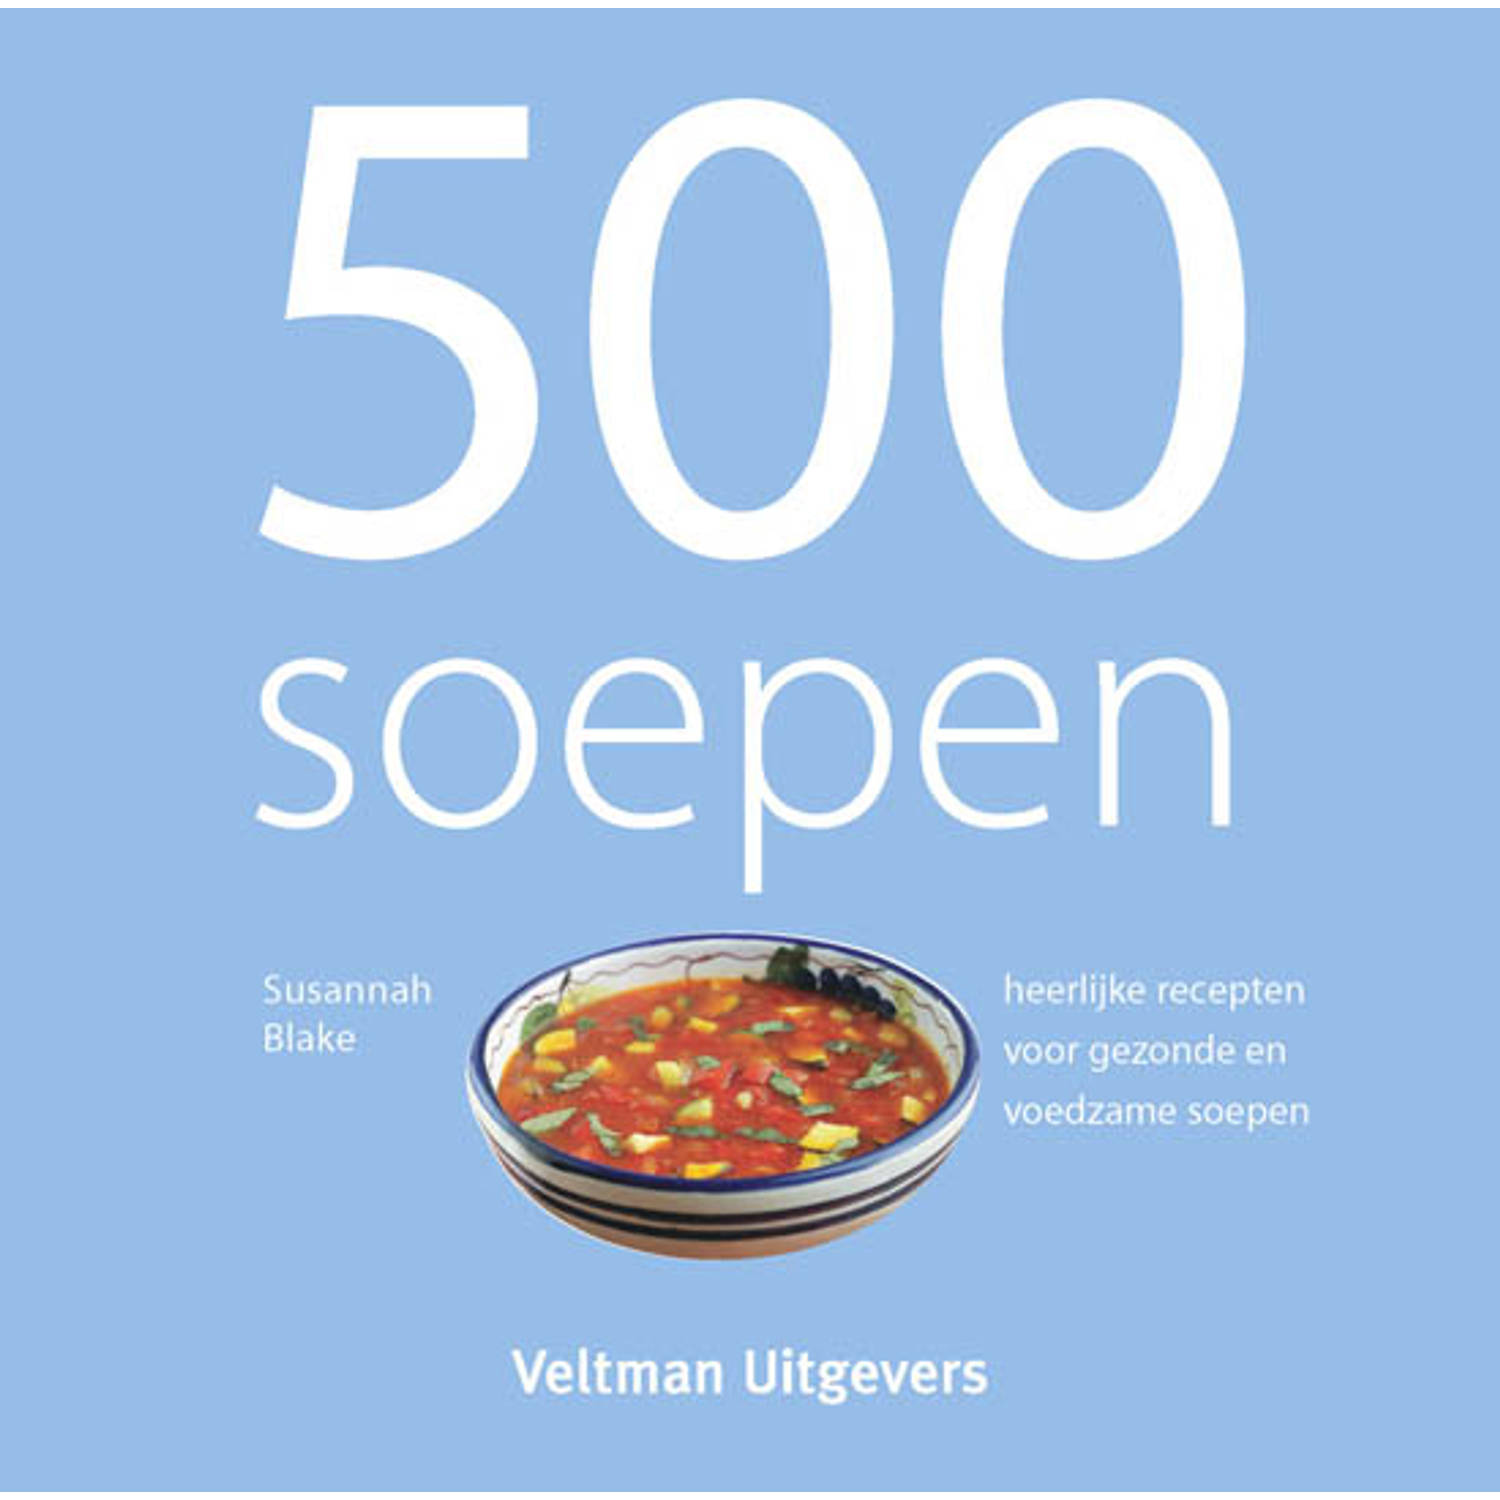 500 soepen